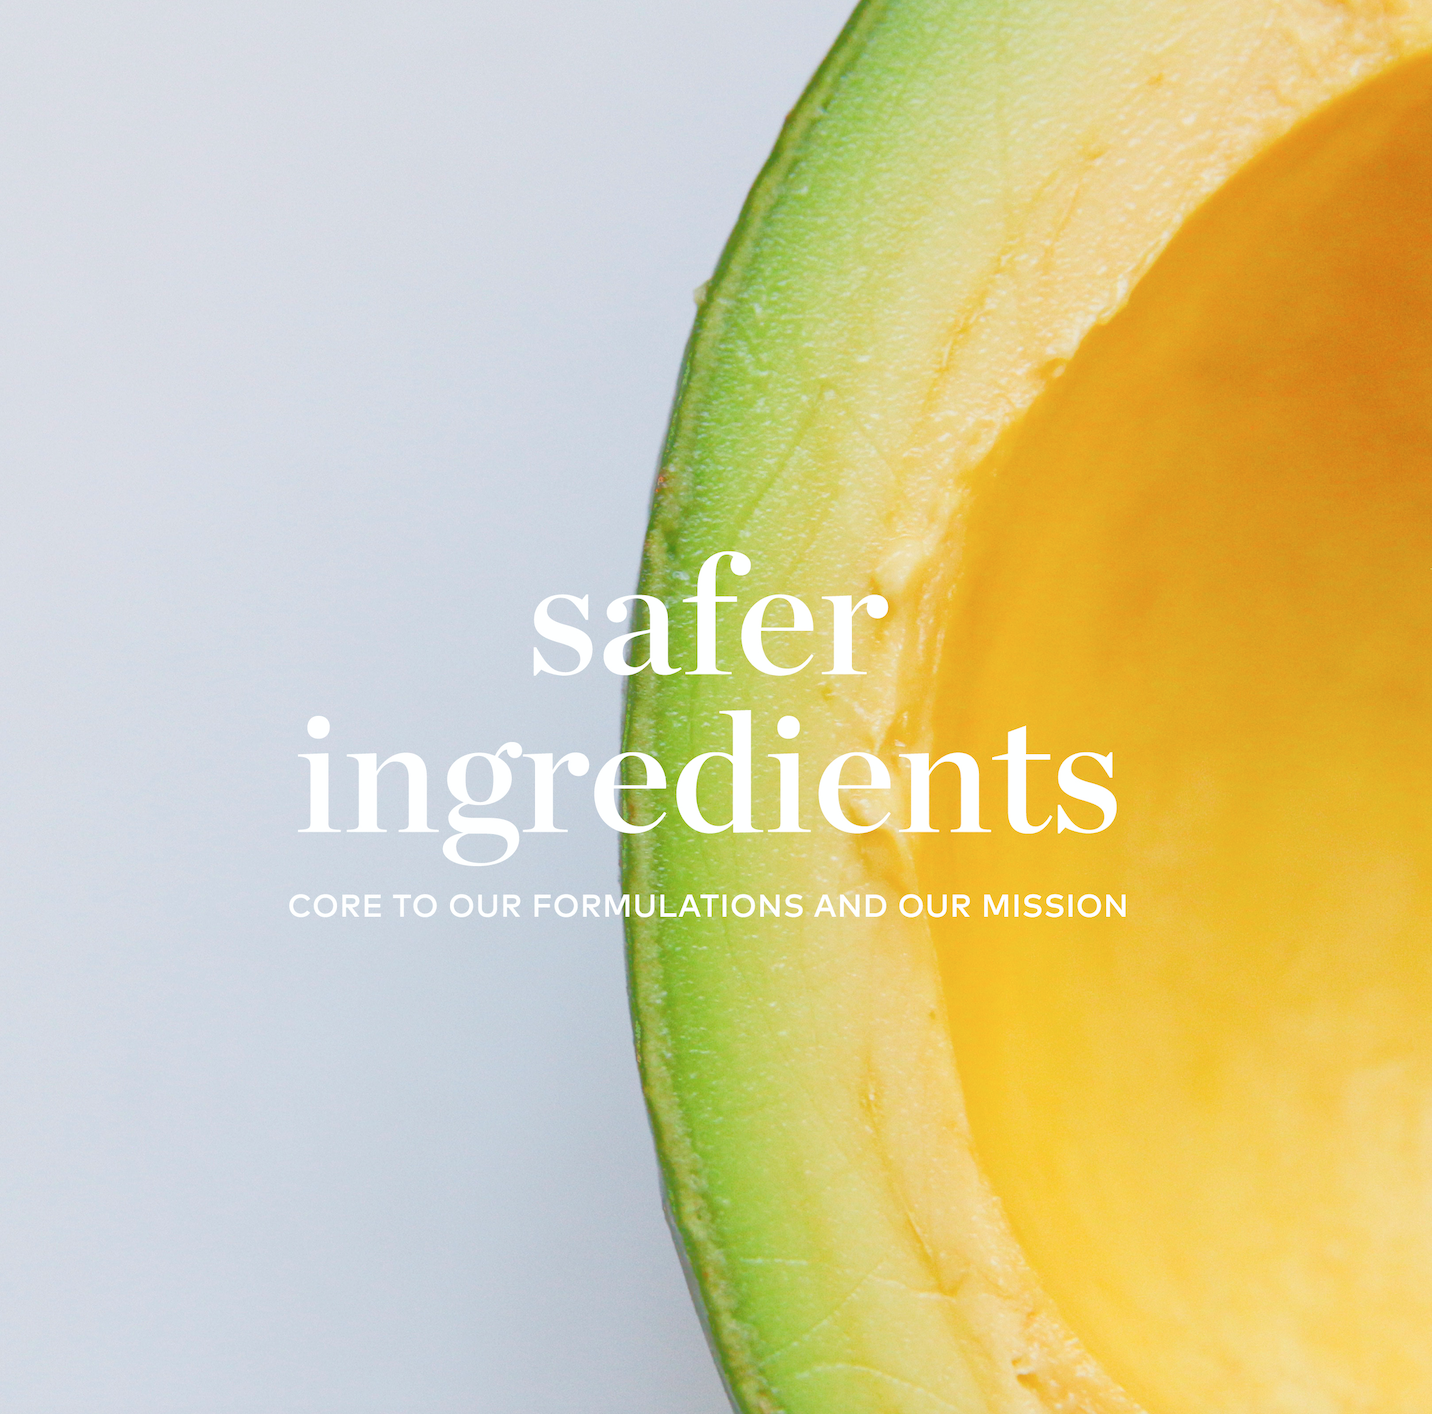 safer ingredients.png